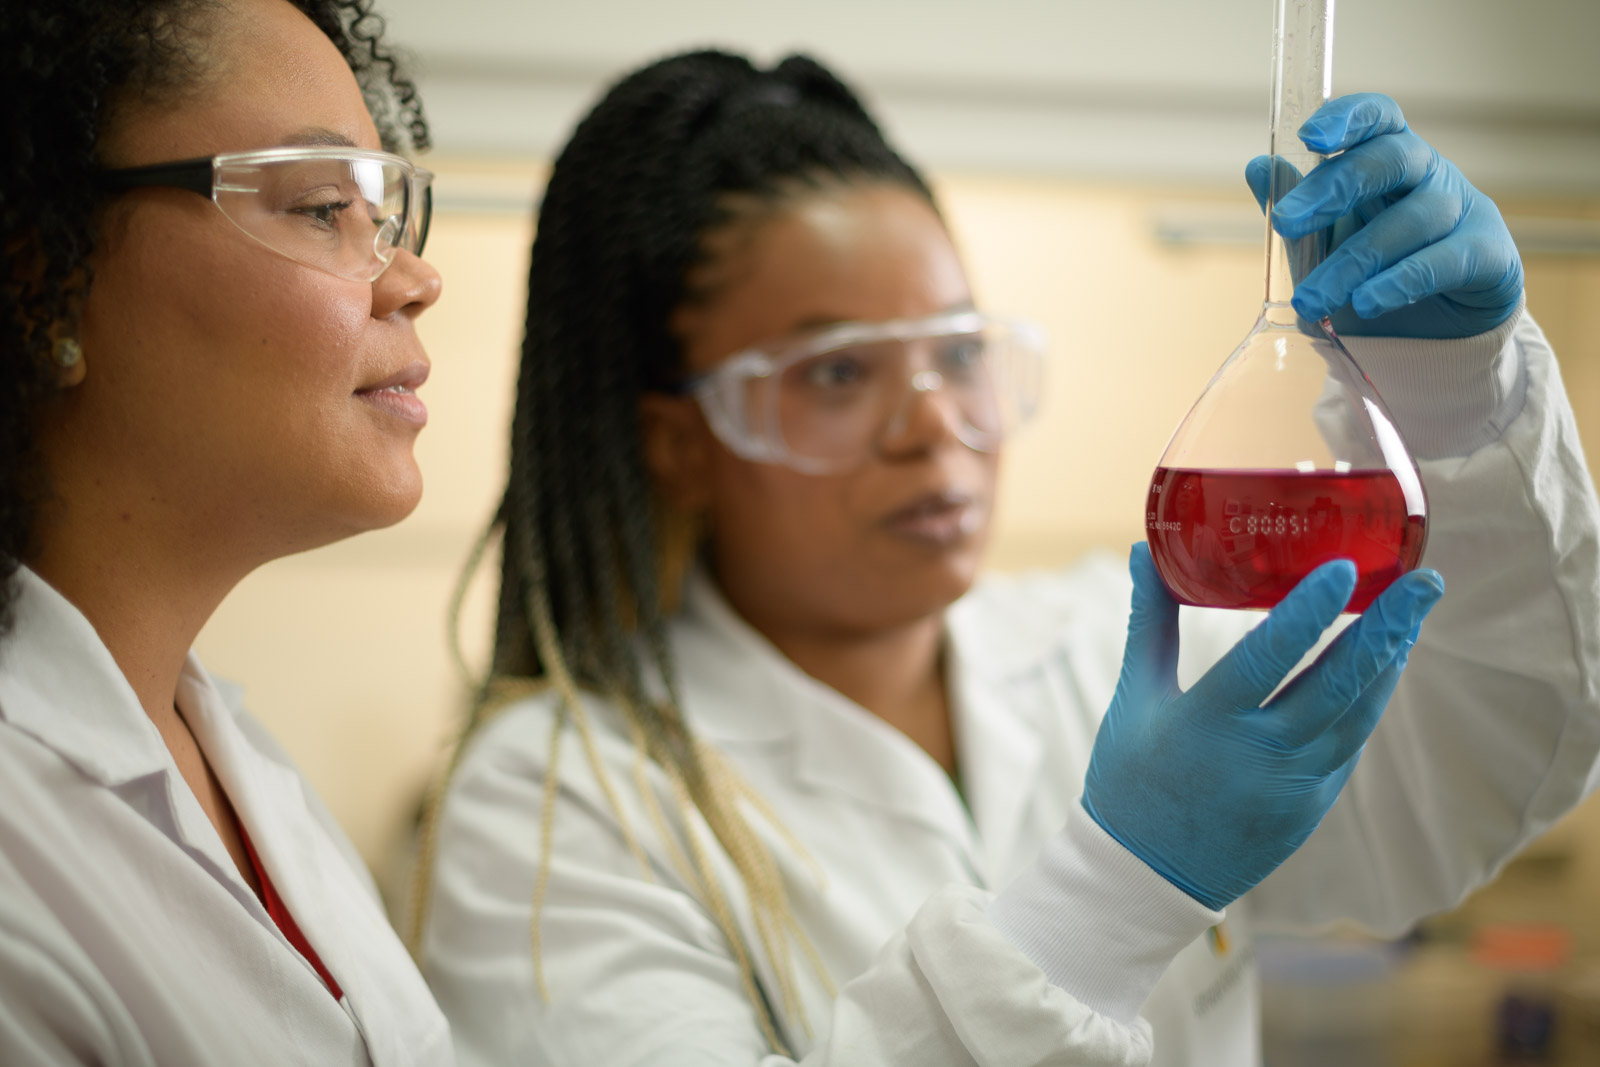 Duas mulheres cientistas estão lado a lado em um laboratório. Elas estão usando óculos de proteção, jalecos branco e luvas azuis. Na